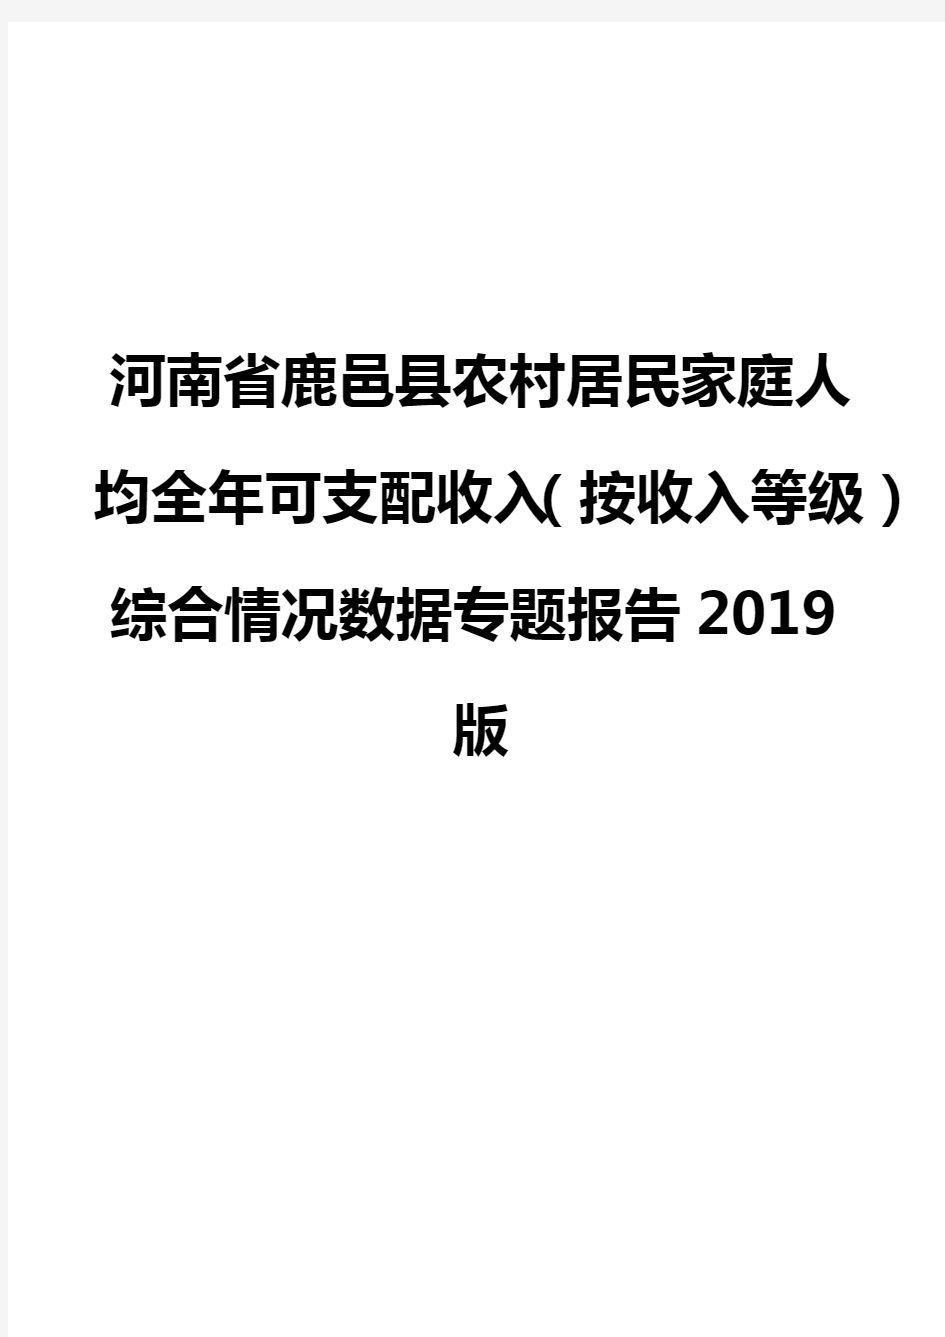 河南省鹿邑县农村居民家庭人均全年可支配收入(按收入等级)综合情况数据专题报告2019版